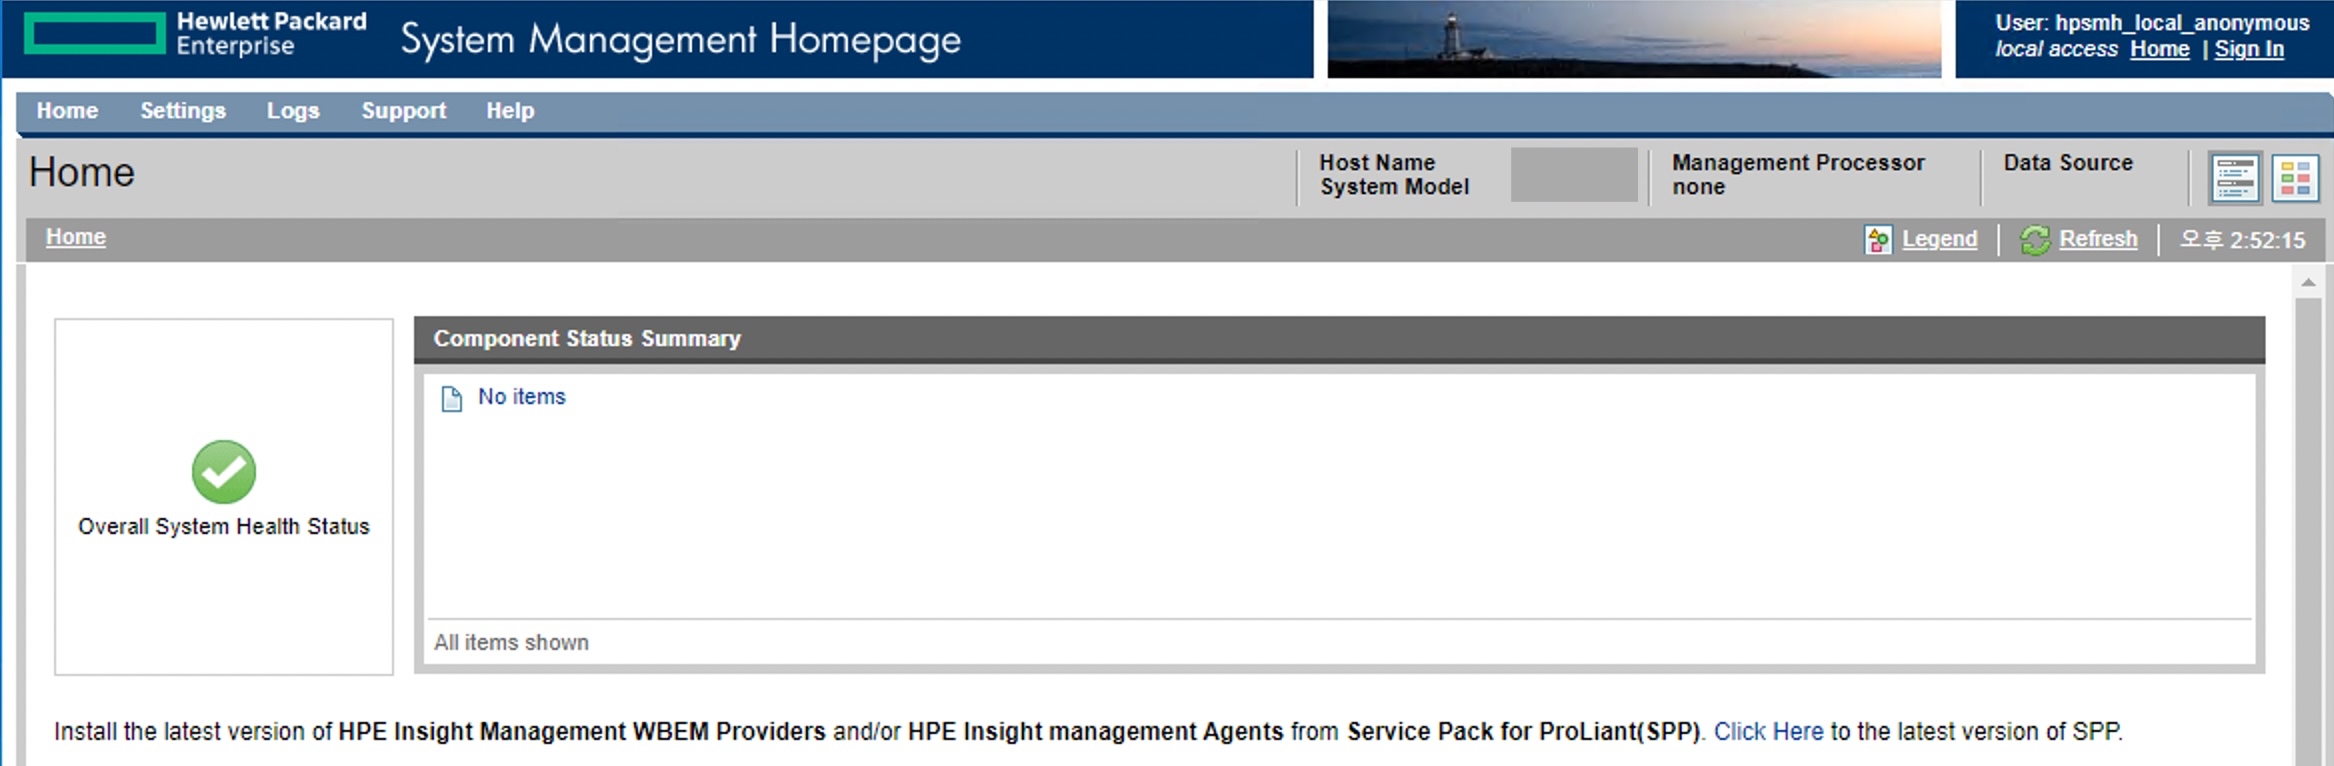 HPE System Management Hompage